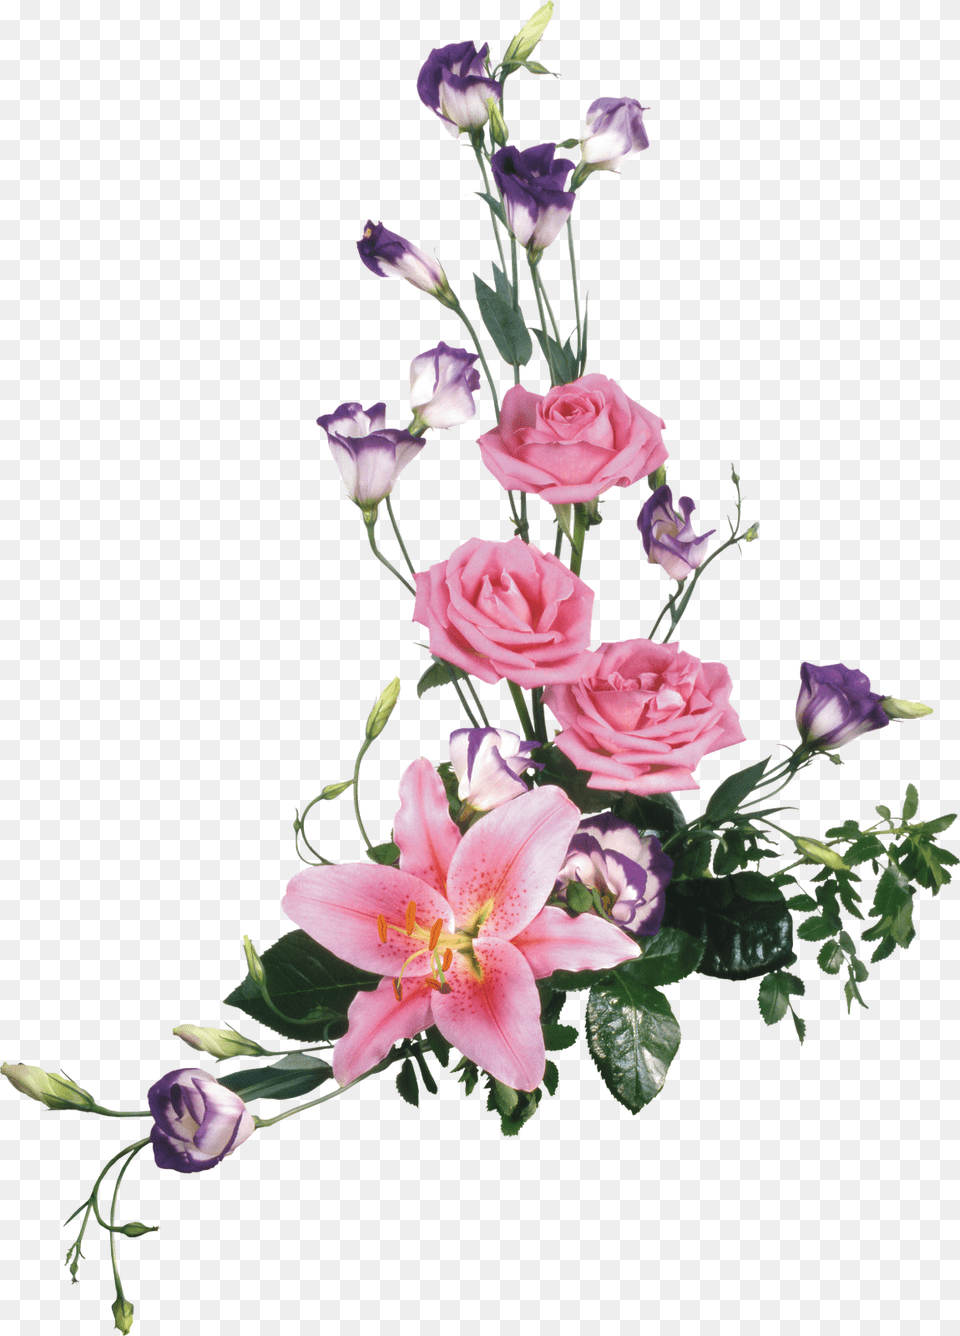 Ramos De Flores, Flower, Flower Arrangement, Flower Bouquet, Plant Free Png Download